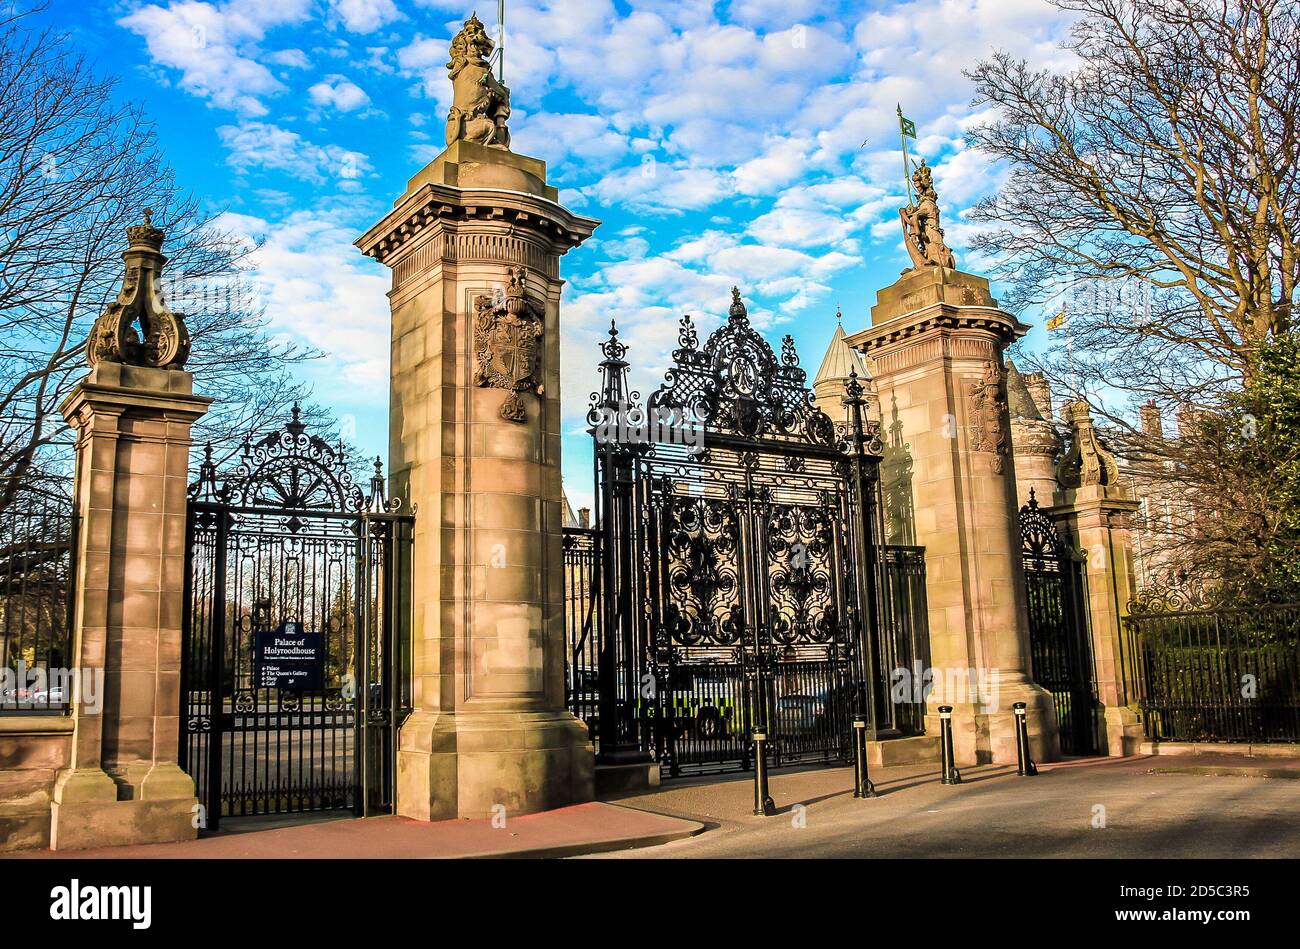 The gates of Holyroodhouse Palace, Edinburgh, Scotland. Stock Photo